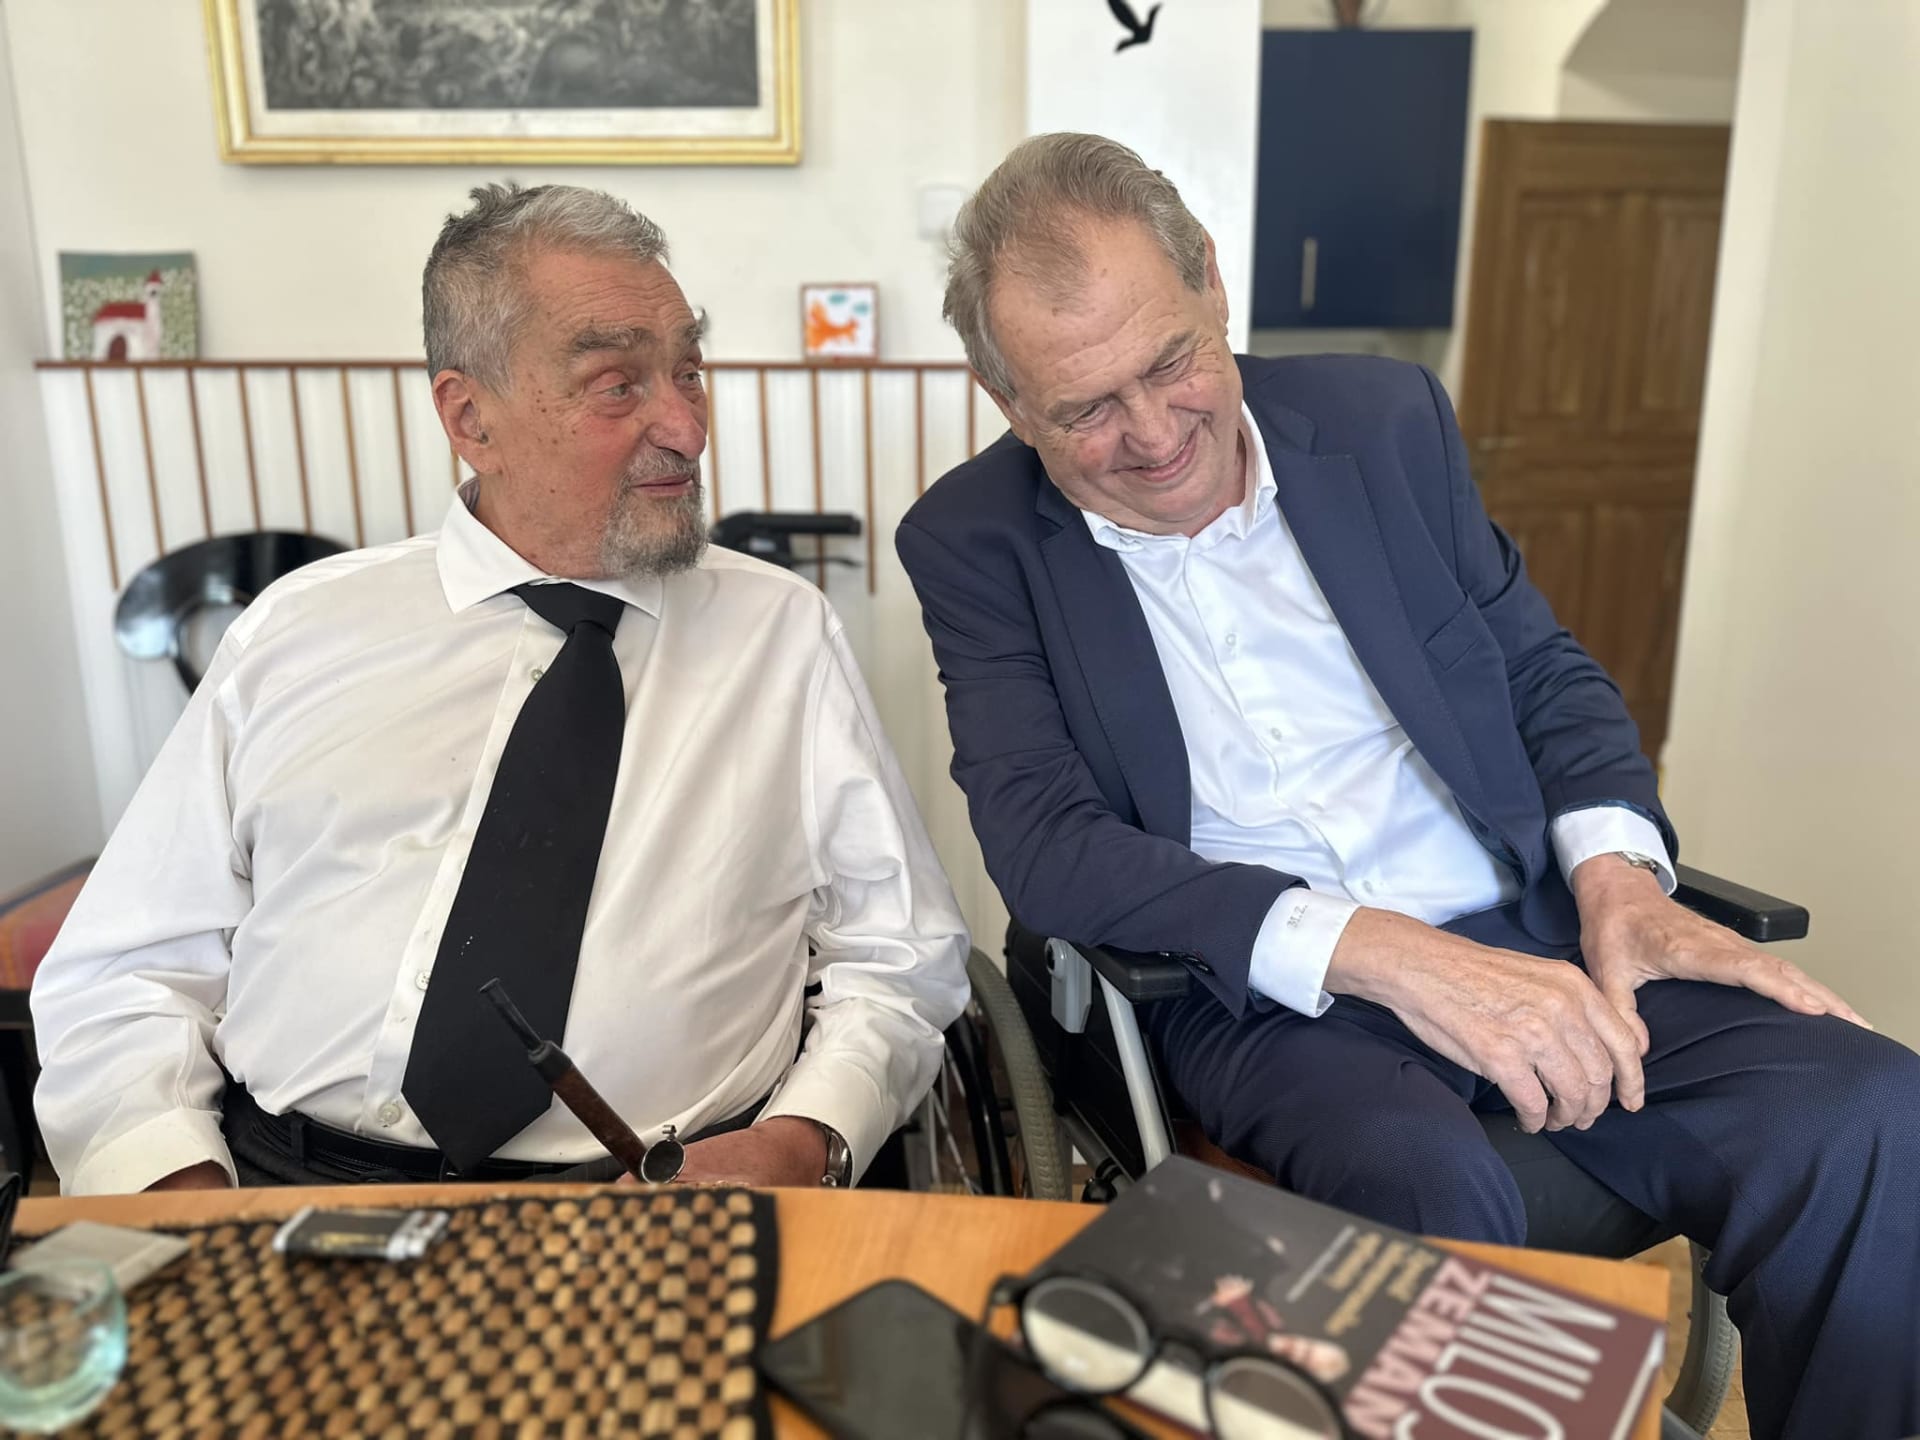 Exprezident Miloš Zeman sdílel poslední společnou fotku s Karlem Schwarzenbergem